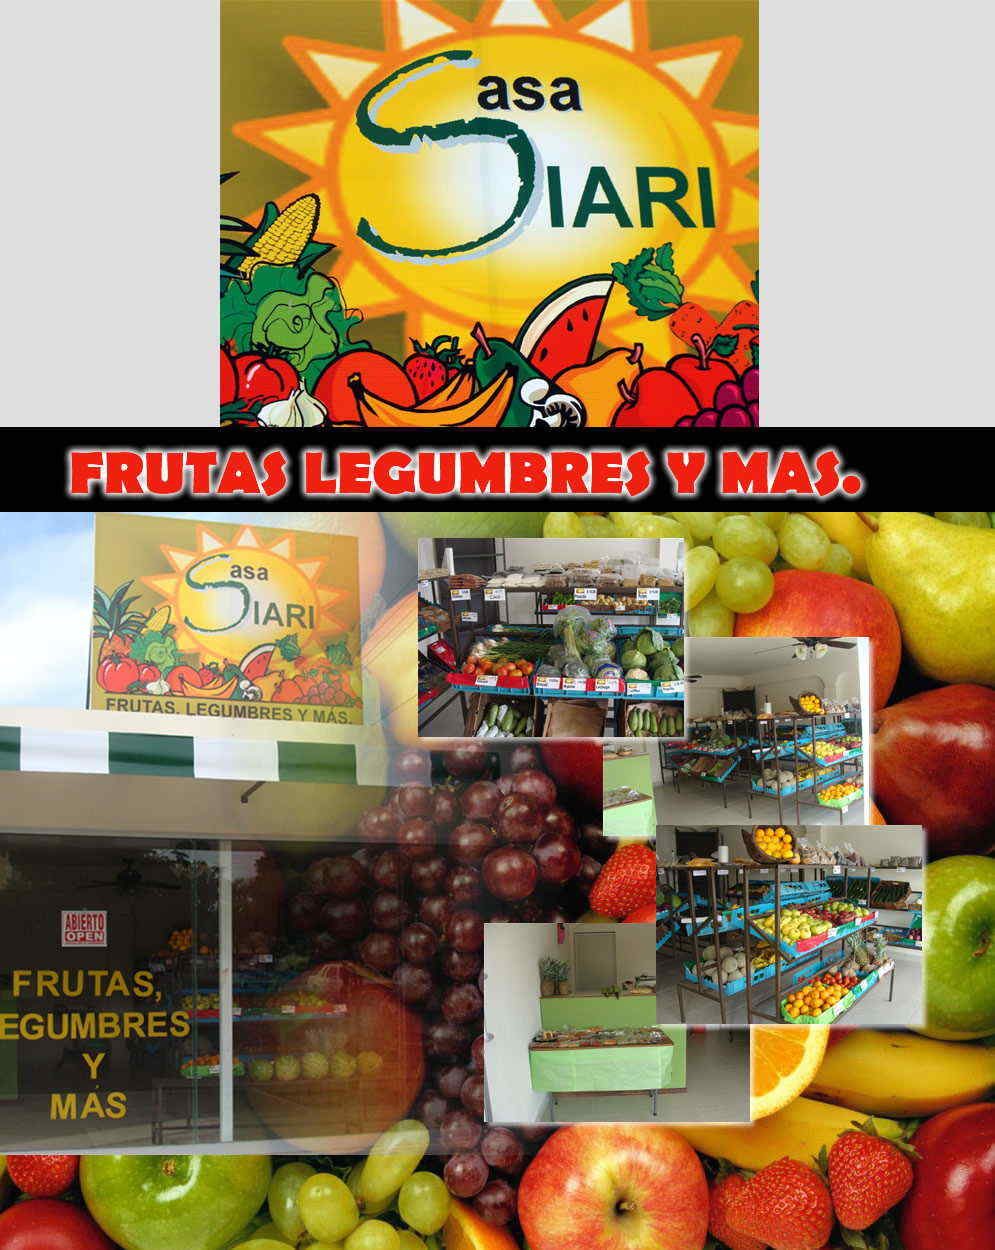 CASA SIARI -Frutas,Legumbres y Mas...